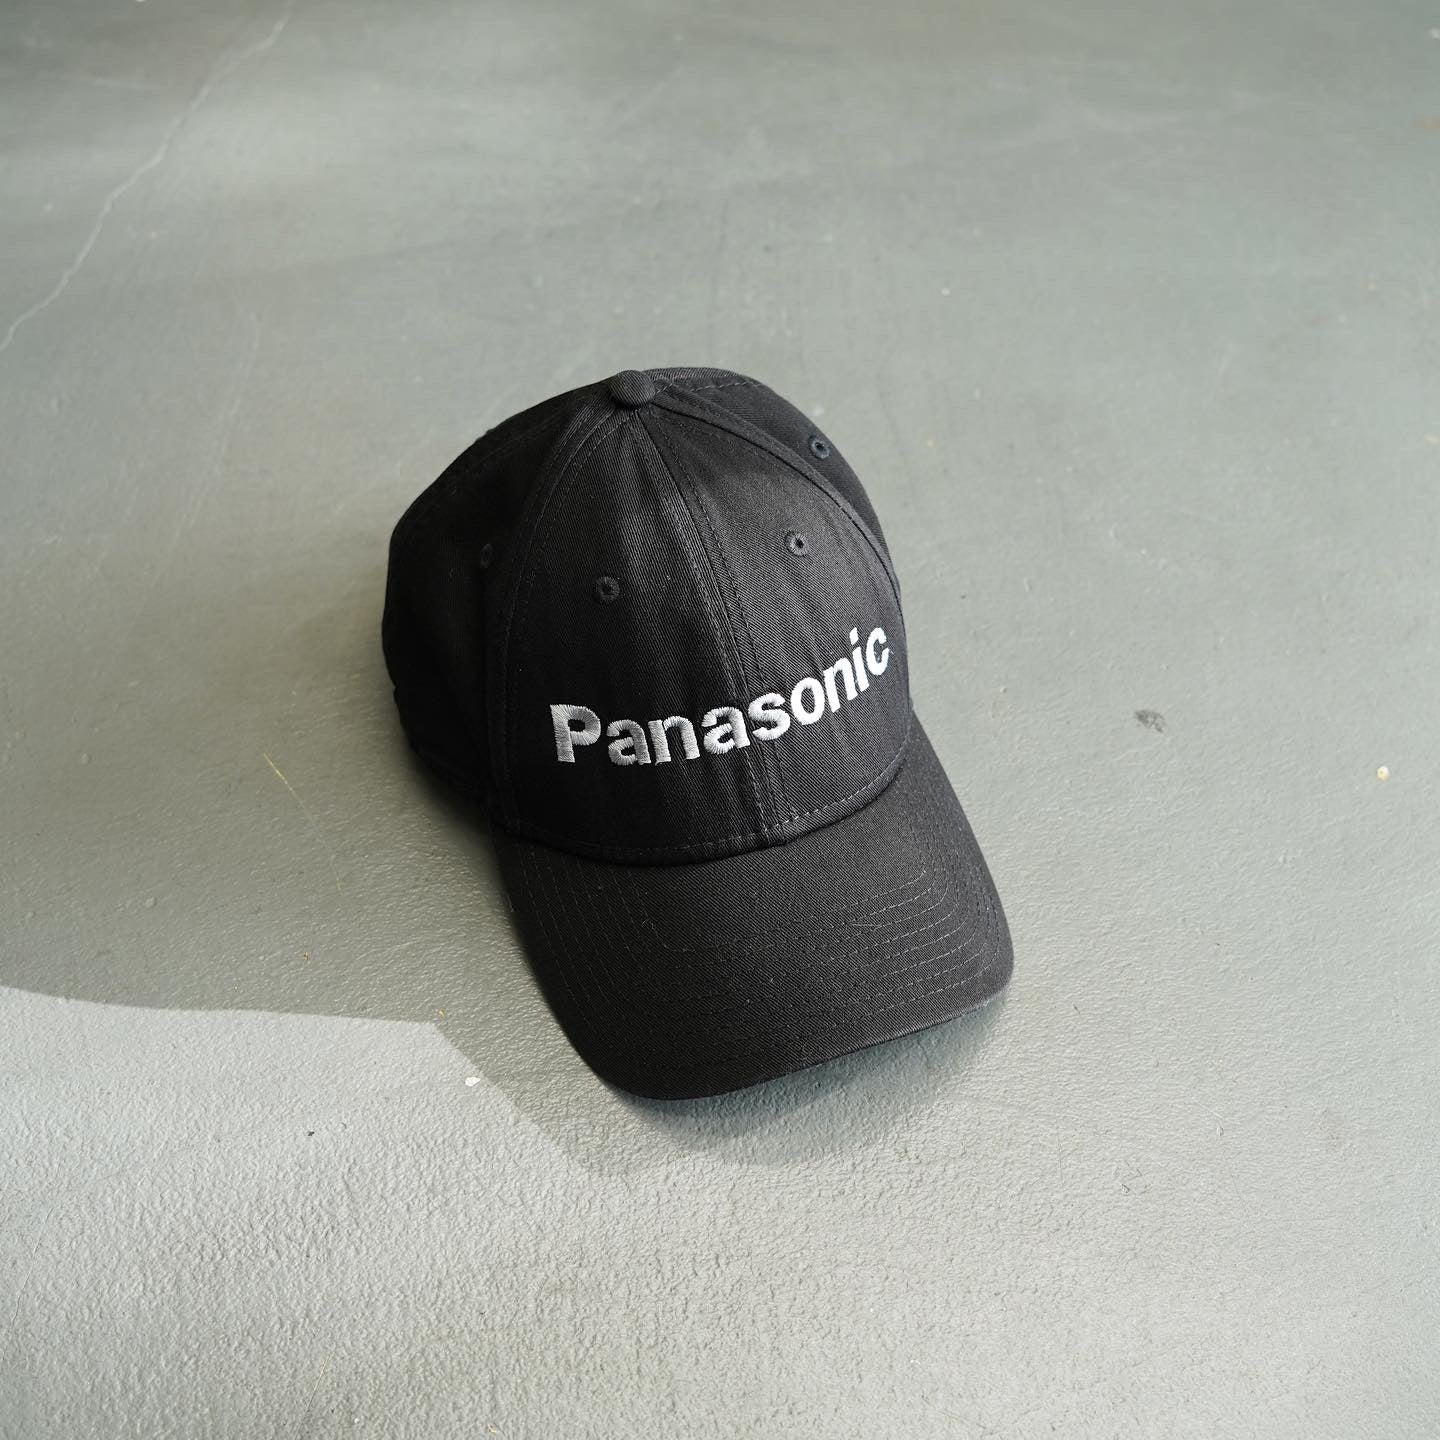 Panasonic x New Era Hat